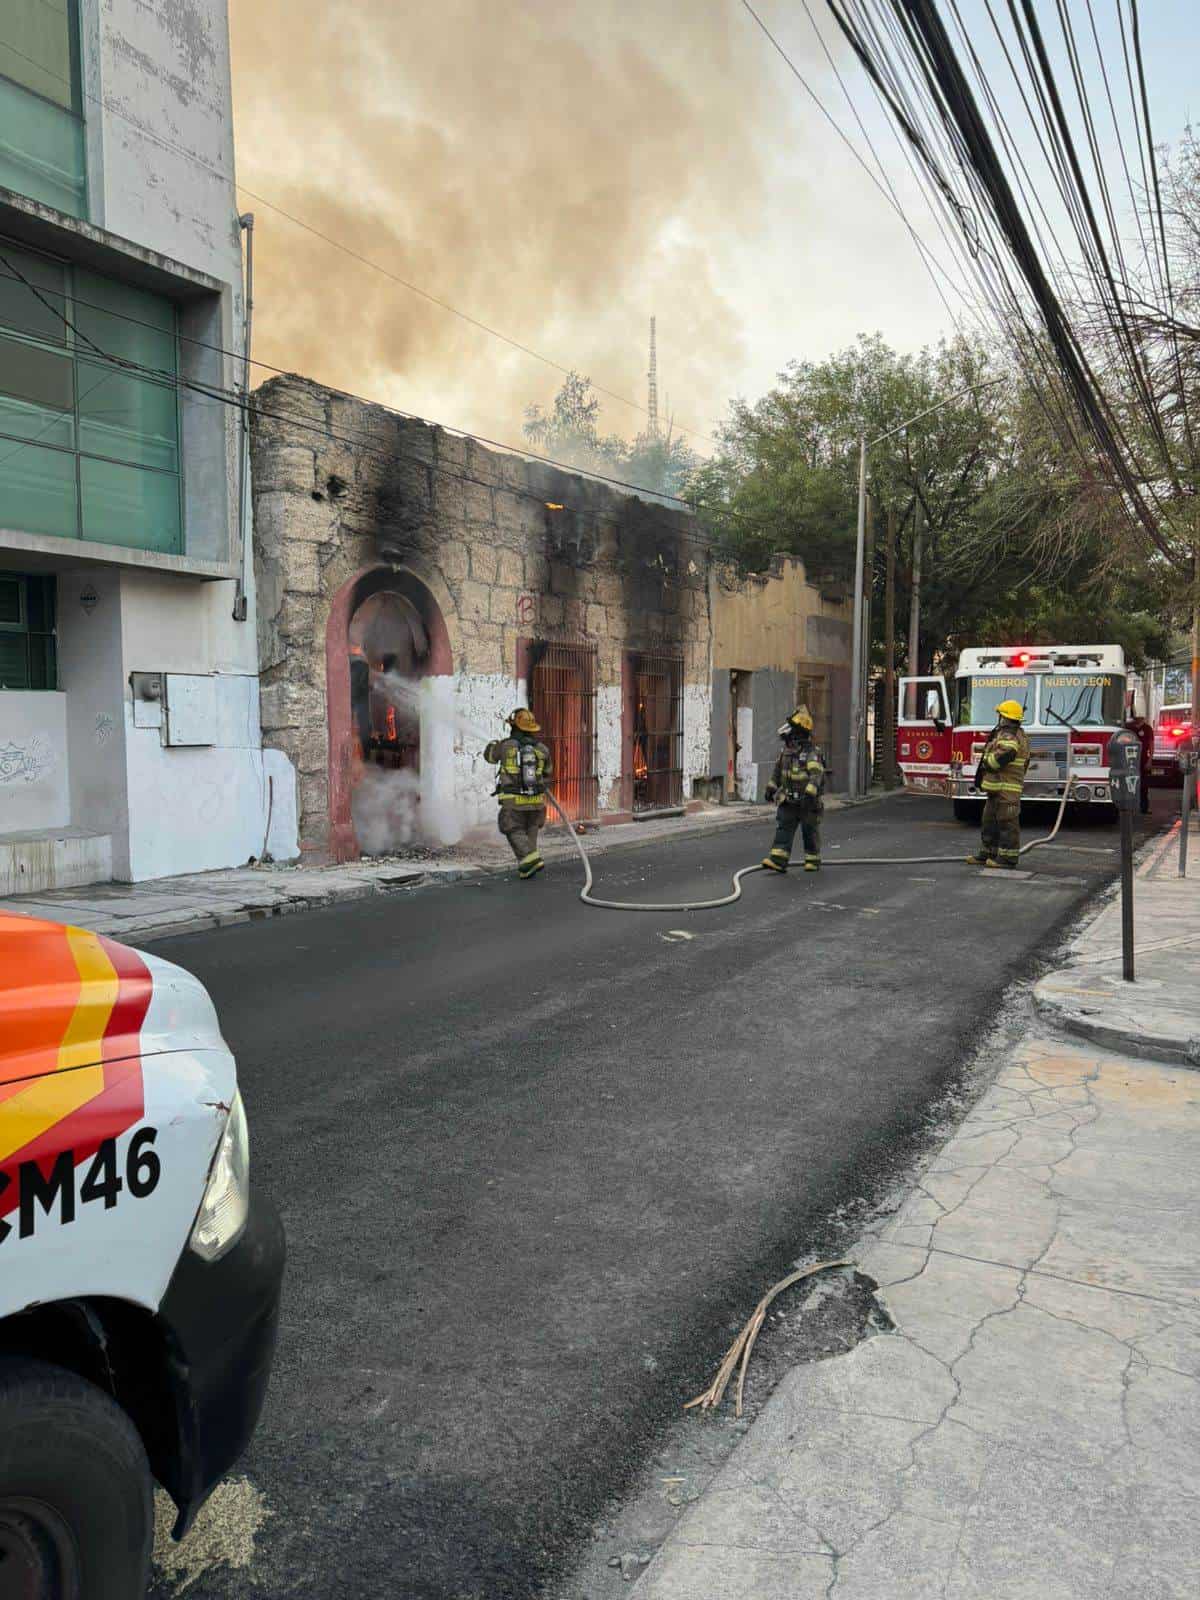 Aproximadamente a las 03:00 se recibe reporte de la central de radio del C4i4 del incendio de una cada habitación, en la calle Álvaro Obregón, entre Tapia y M.M. de Llano.